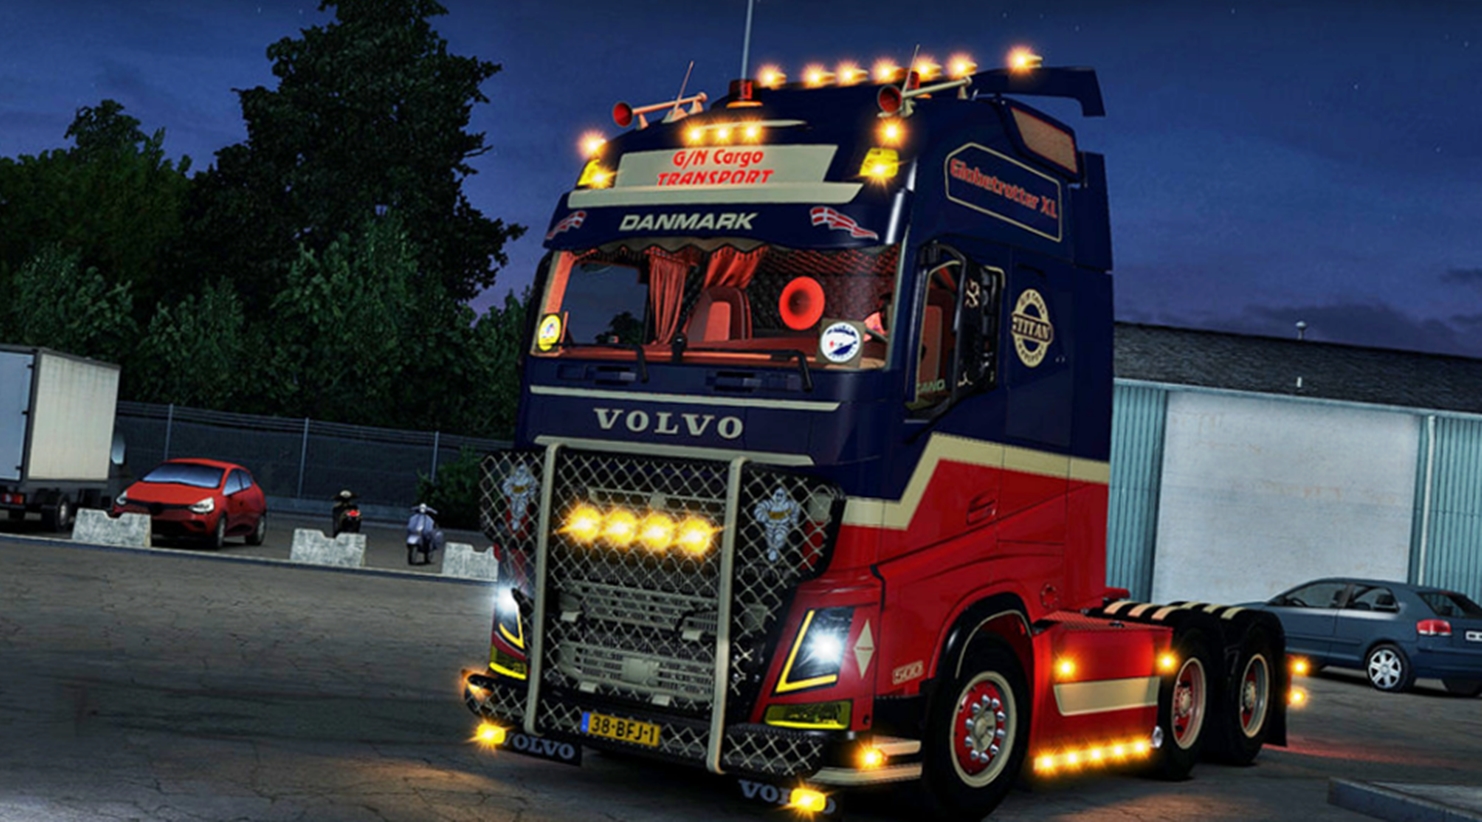 euro truck simulator 2 utorrent 2016